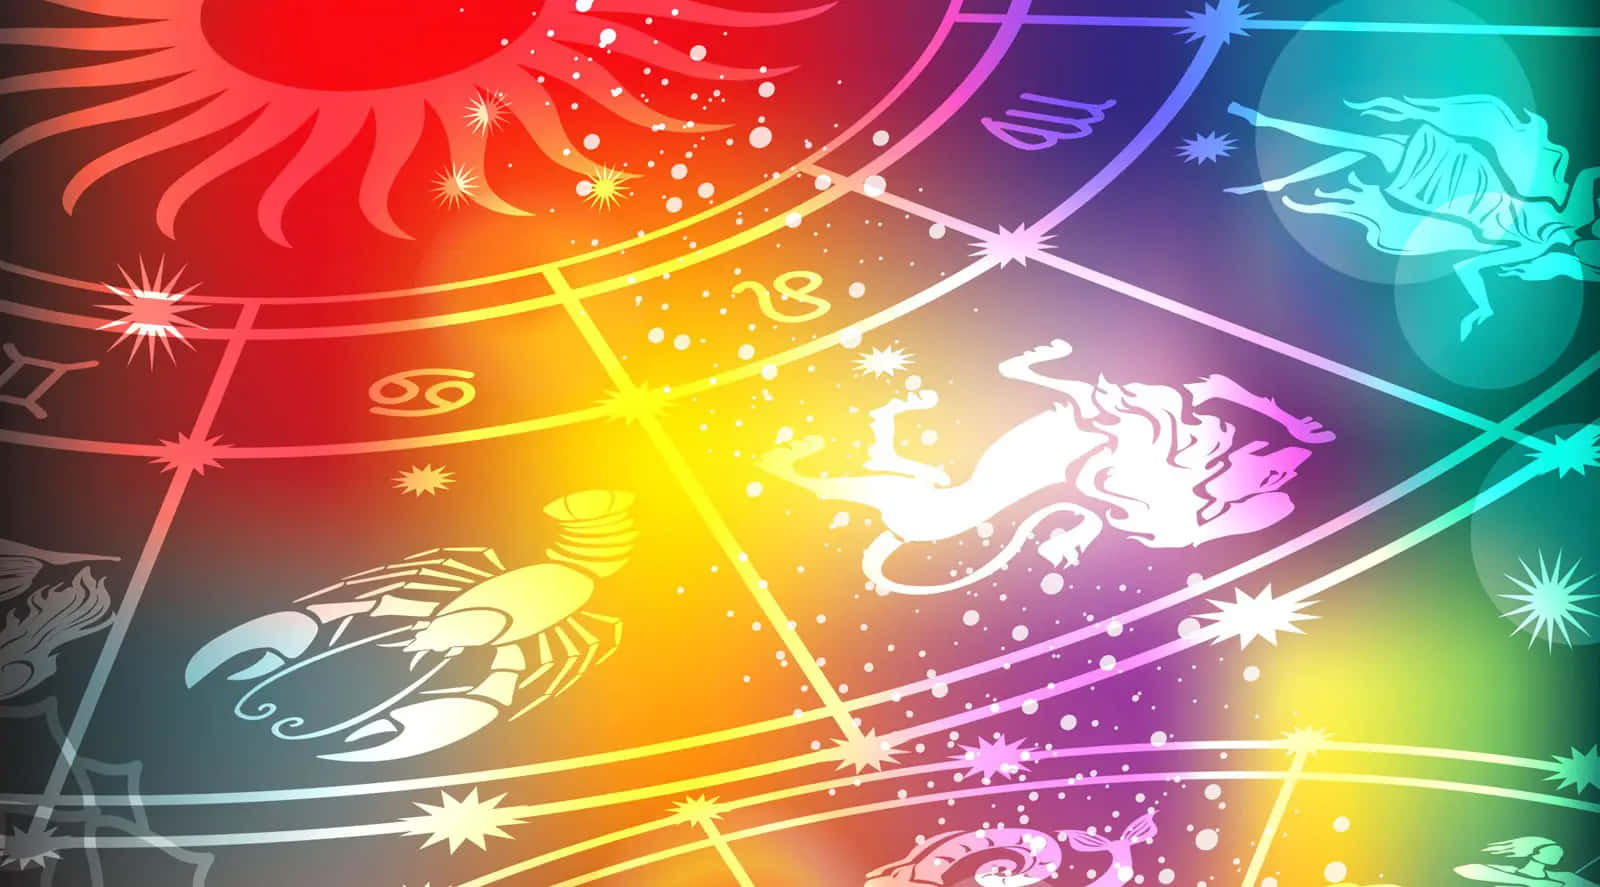 Astrologiskatecken På En Regnbågsbakgrund